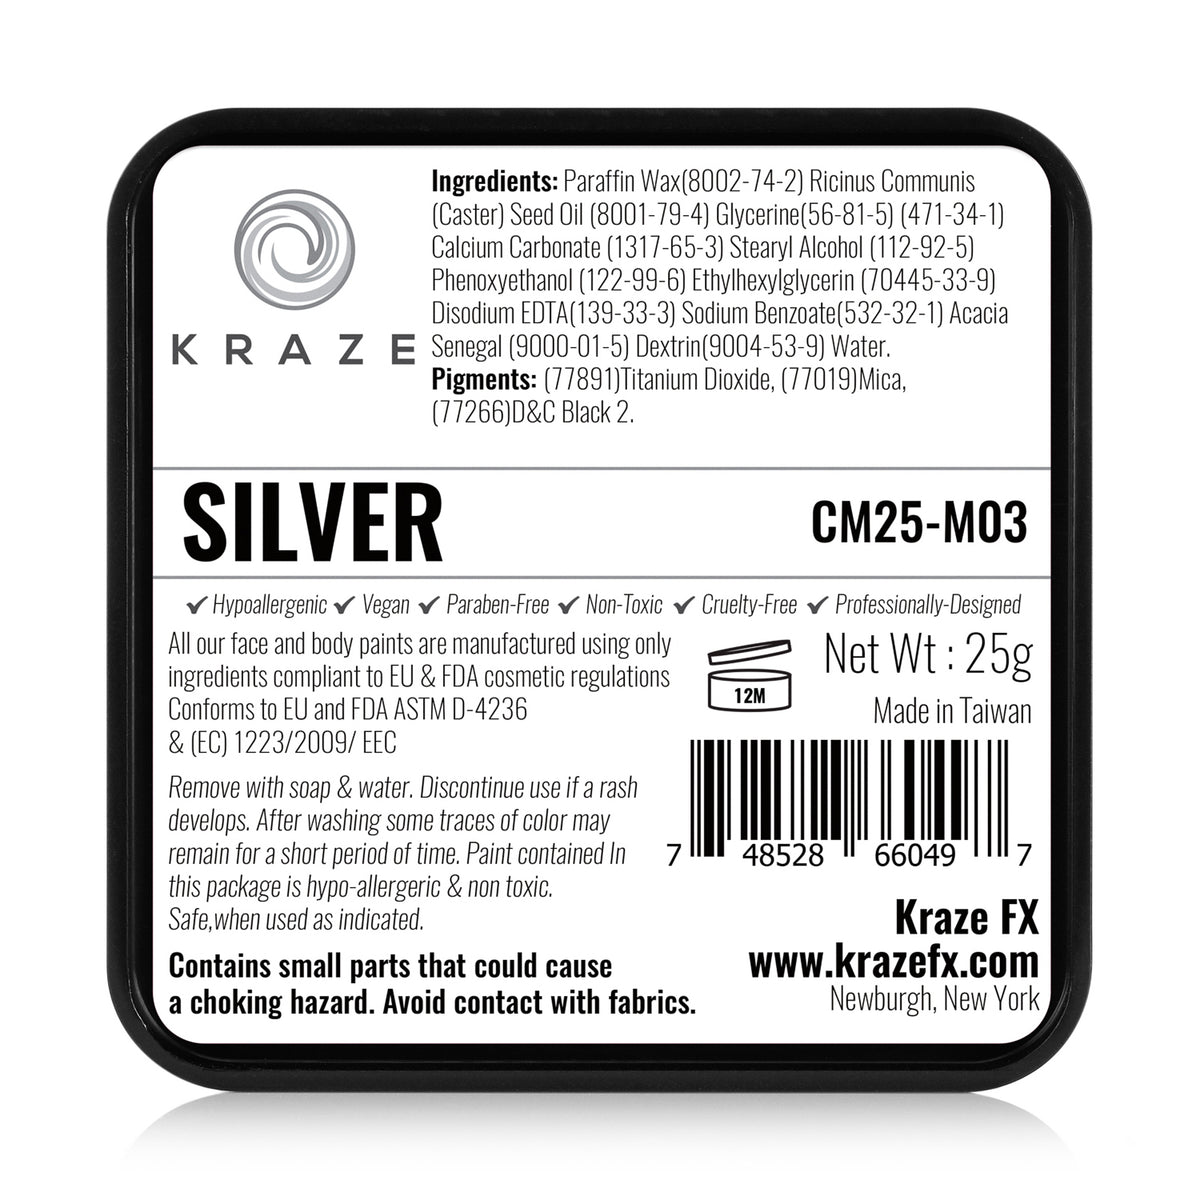 Kraze FX Face Paint - Metallic Silver (25 gm)